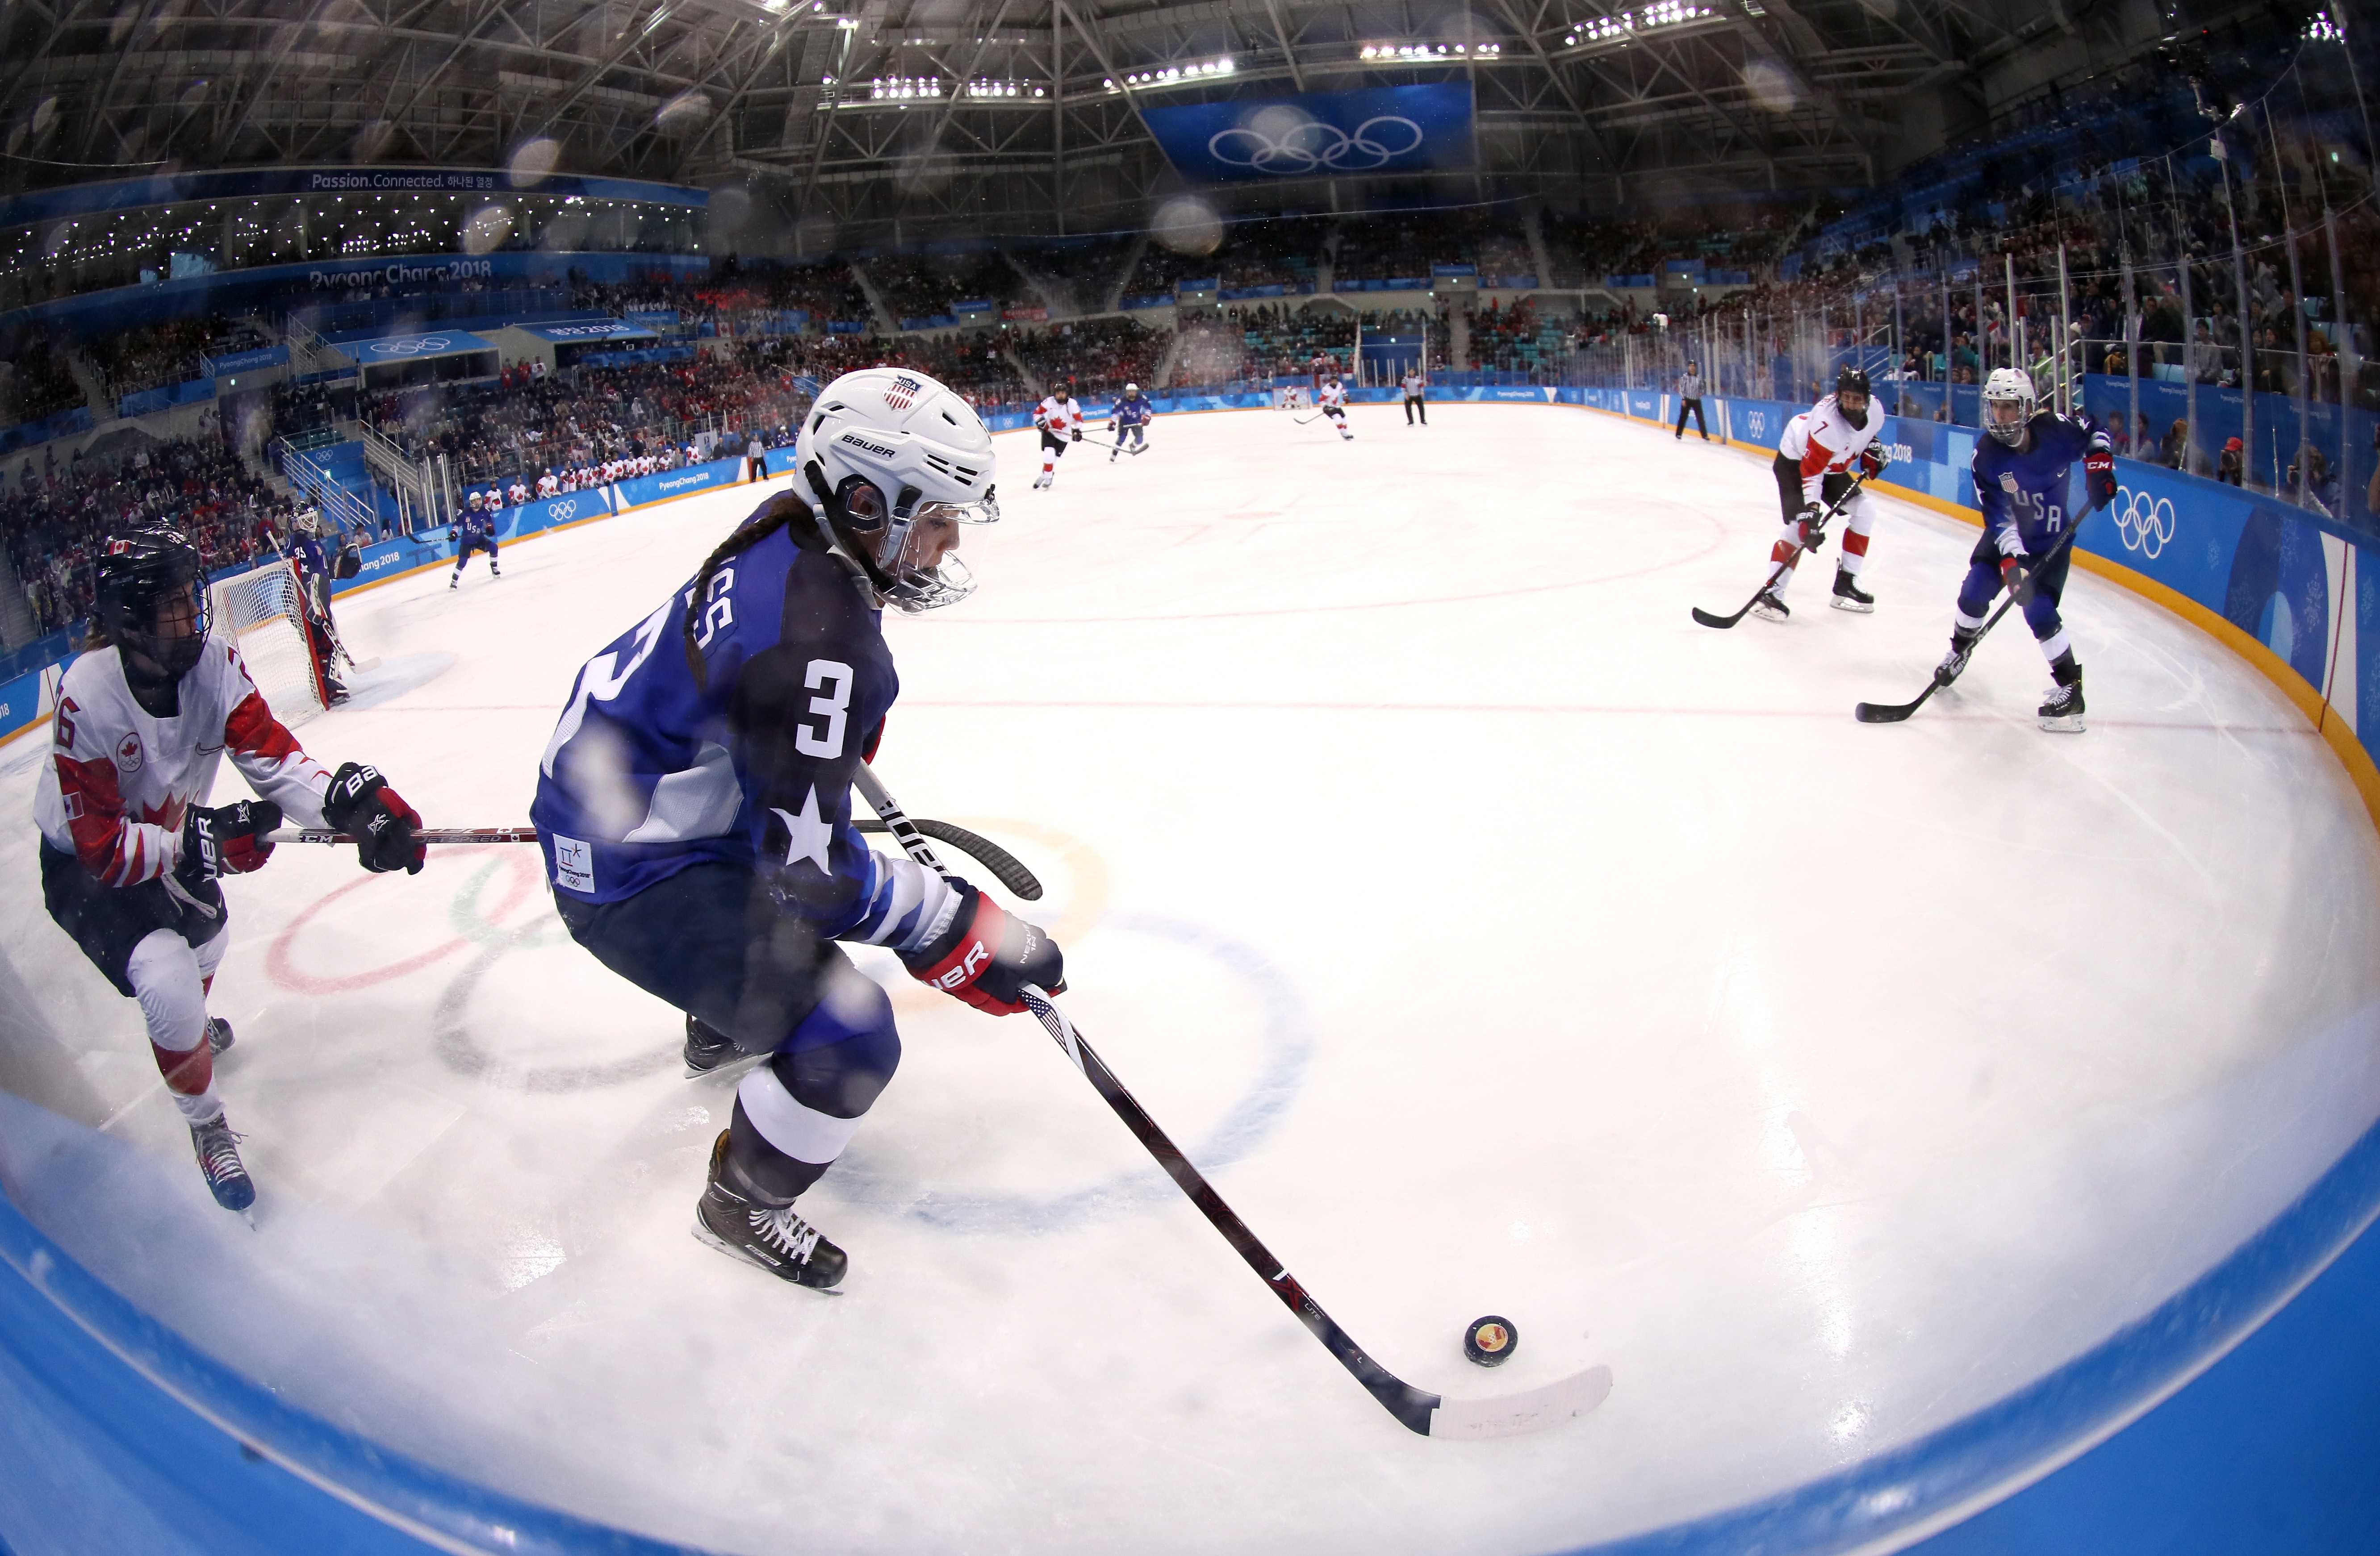 Ice Hockey - Winter Olympics Day 13 - LA84 Foundation